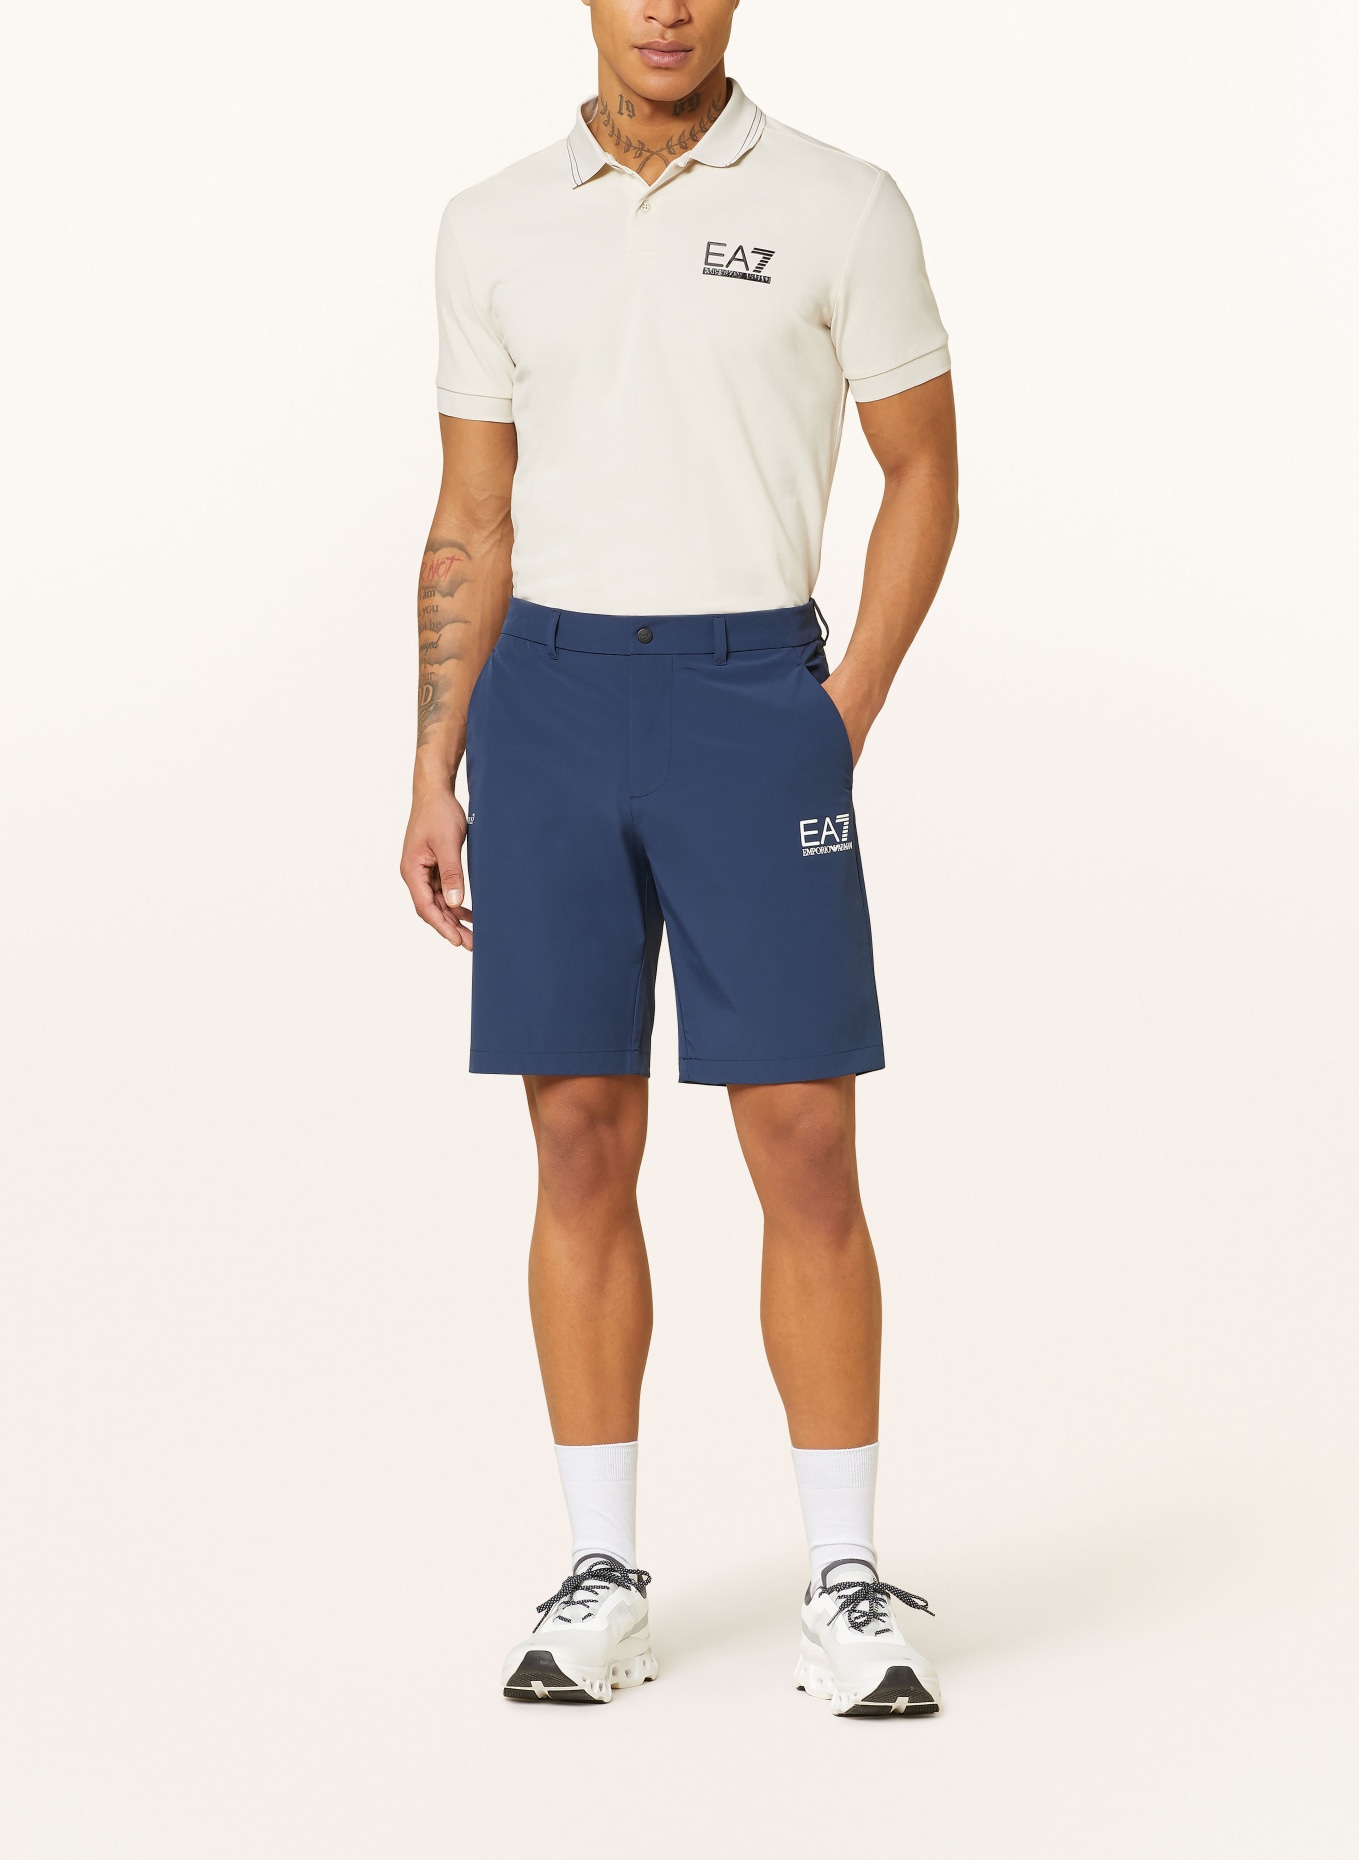 EA7 EMPORIO ARMANI Golf shorts, Color: DARK BLUE (Image 2)